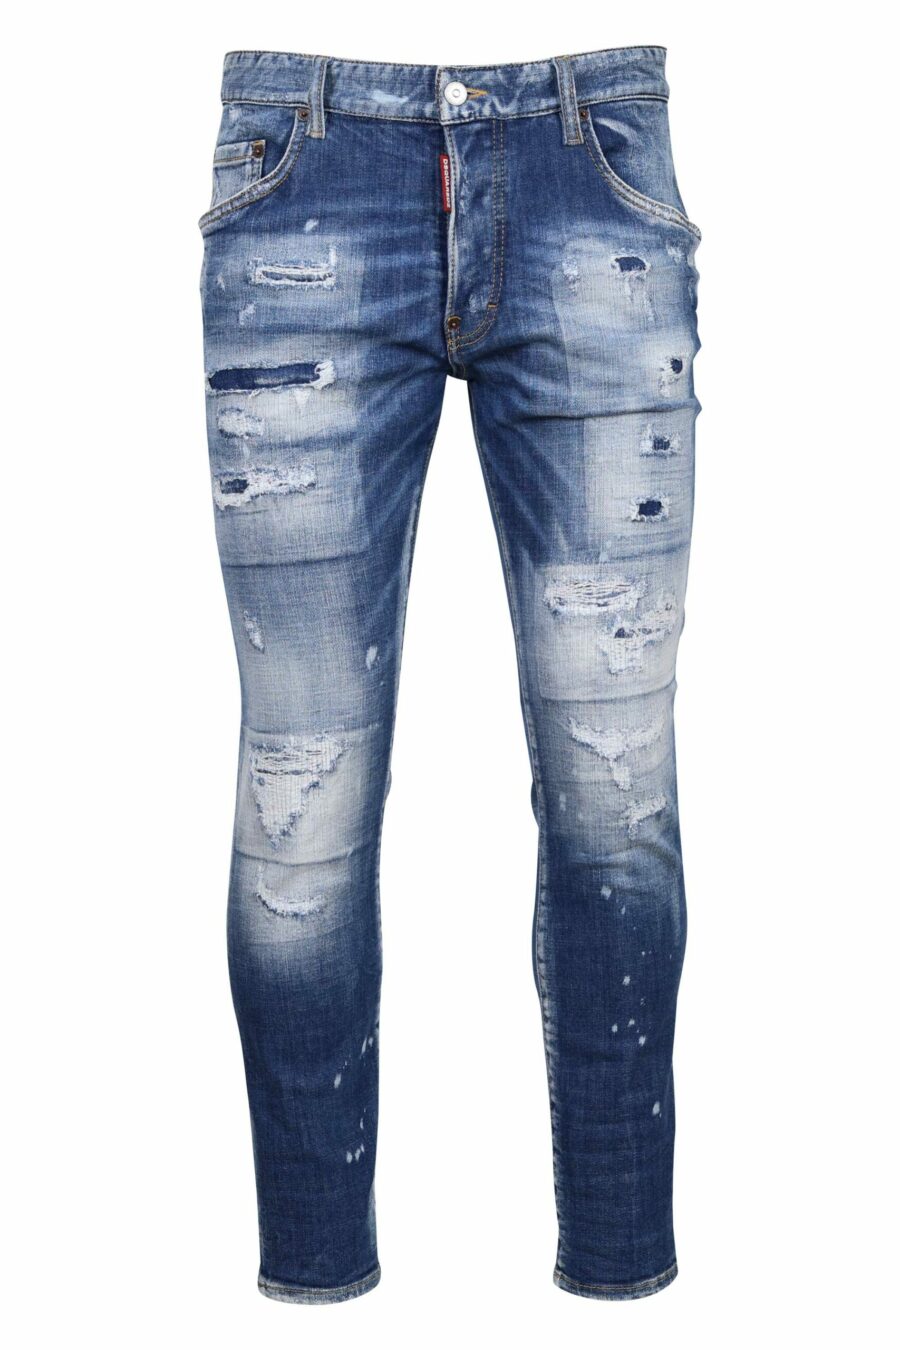 Hellblaue Jeans "Skaterjean" mit Rissen und ausgefranst - 8054148338848 skaliert